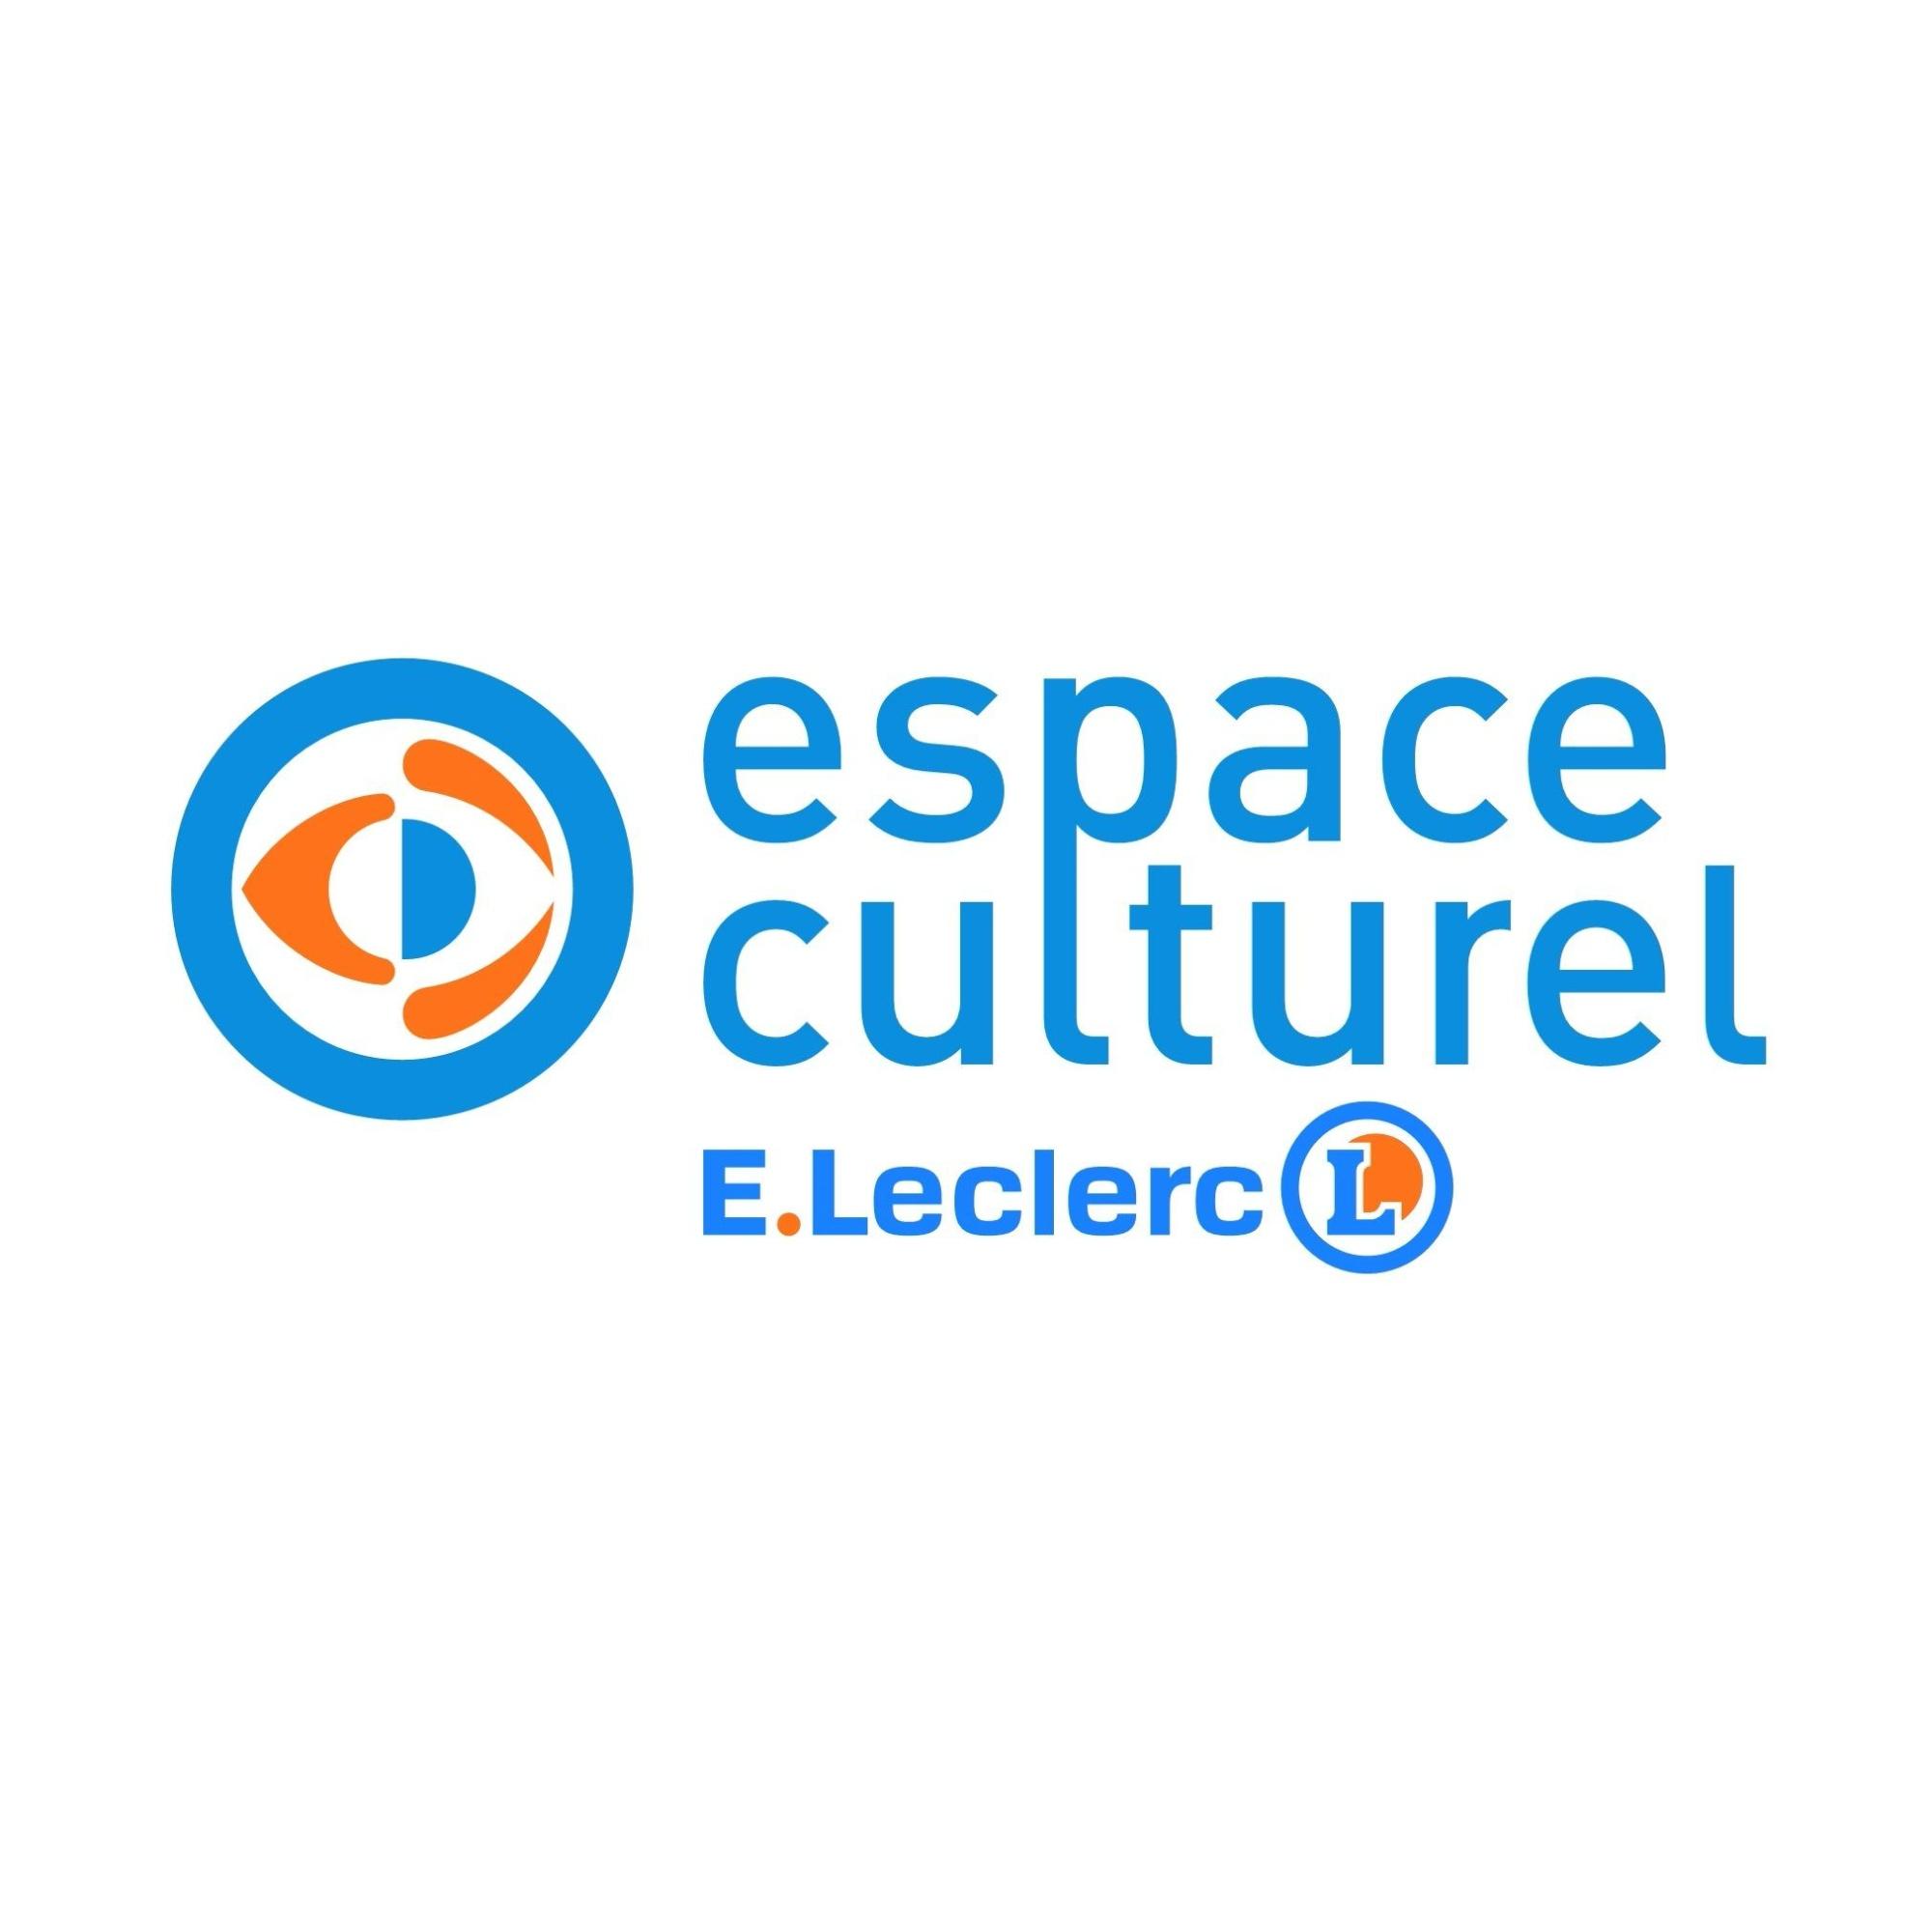 E.leclerc Espace Culturel Saint Gilles Croix De Vie